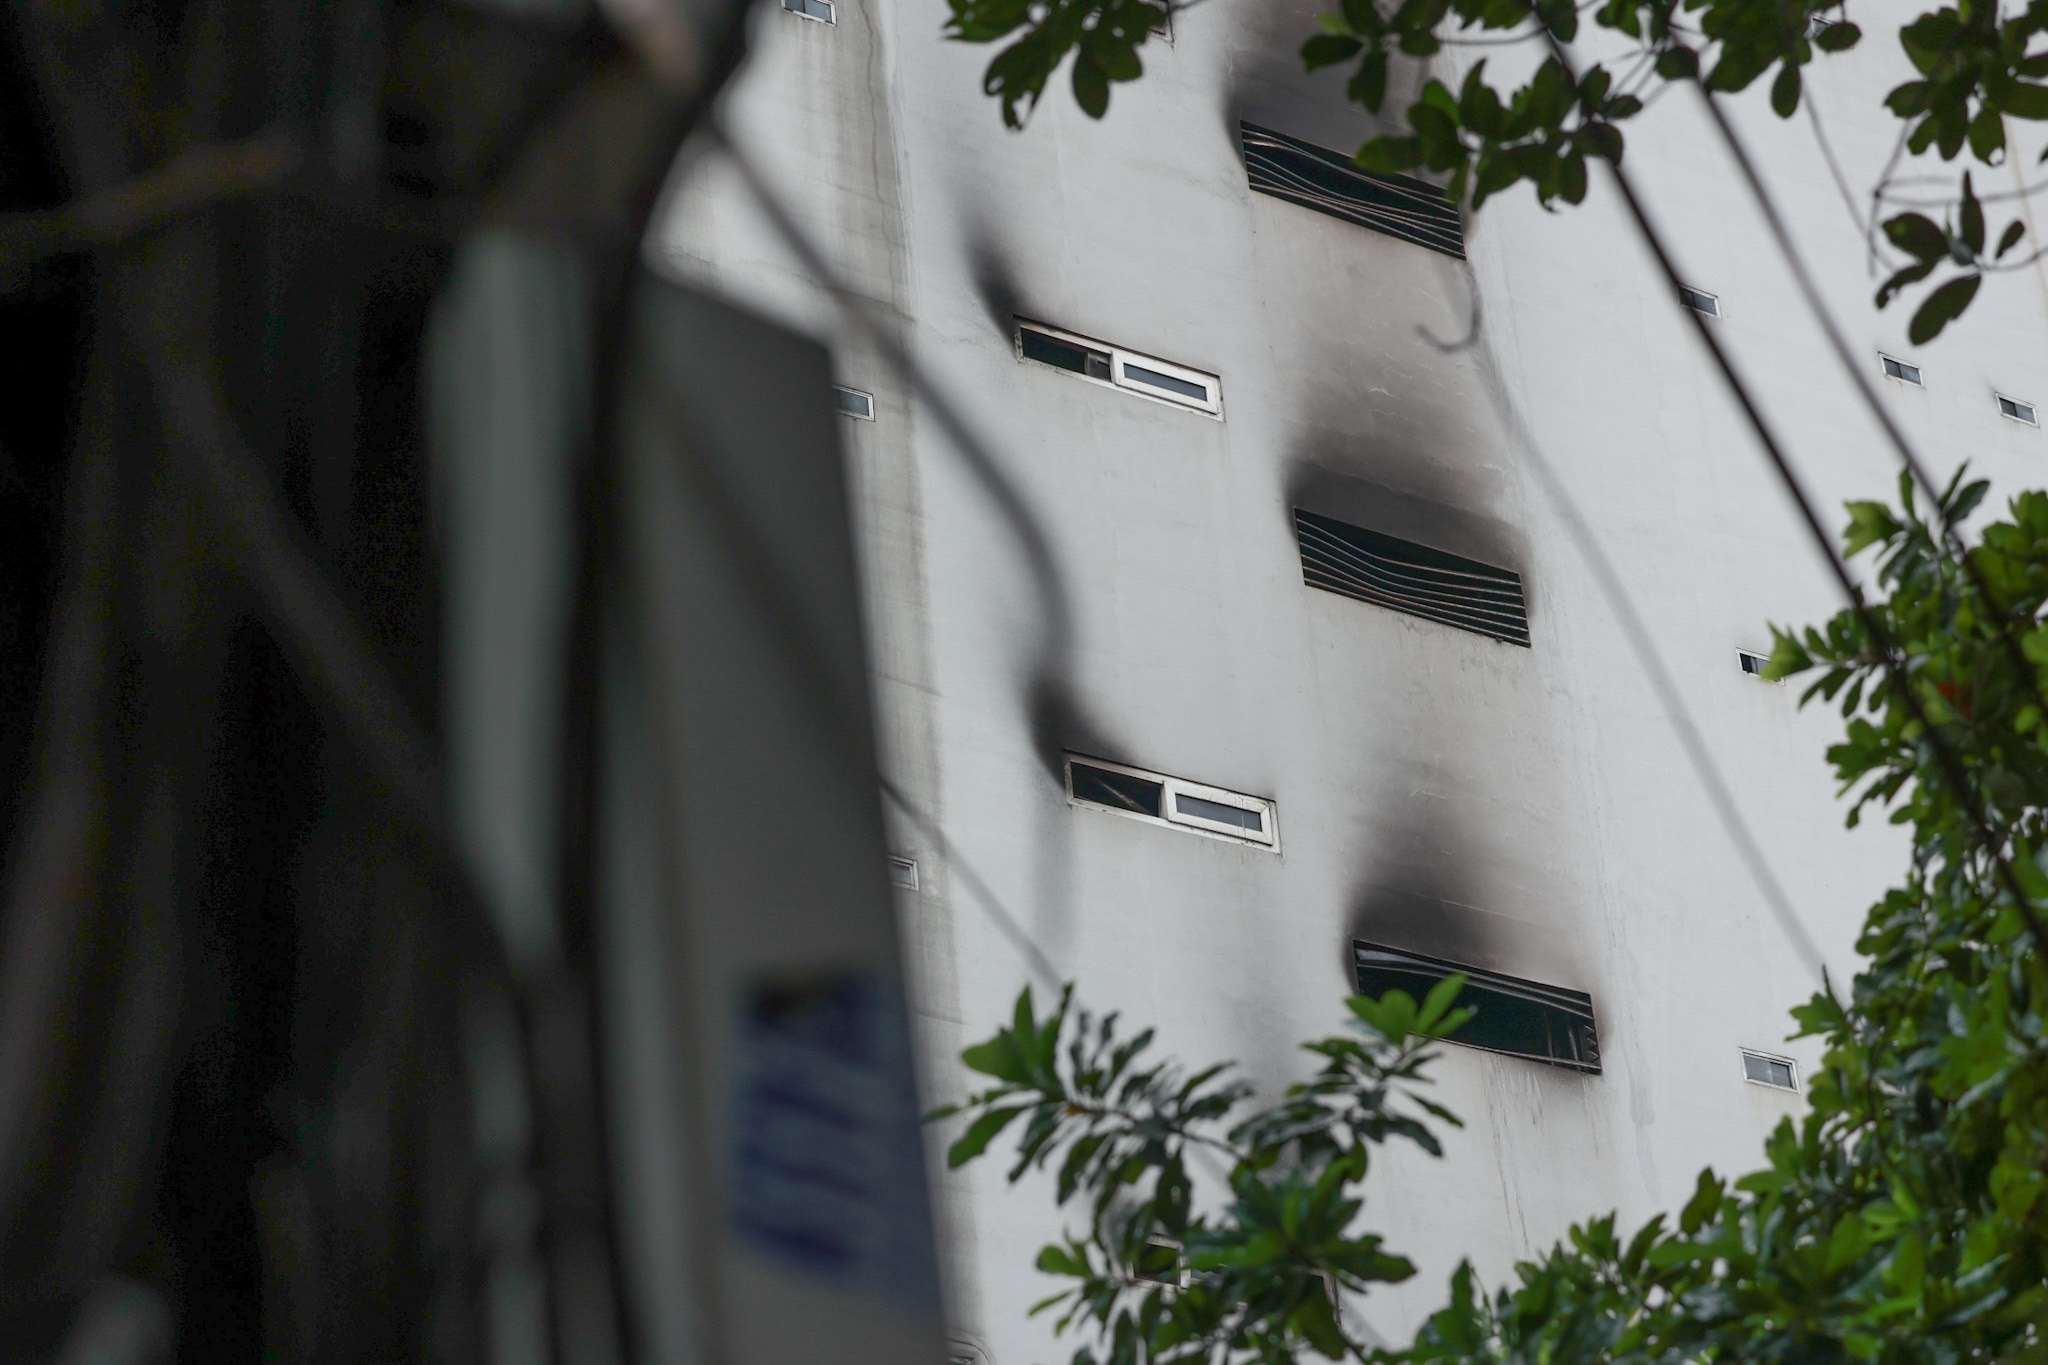 Vệt khói đen hằn rõ tại các ô cửa thông gió sau vụ cháy chung cư mini Khương Hạ, Thanh Xuân. Ảnh: Hải Nguyễn